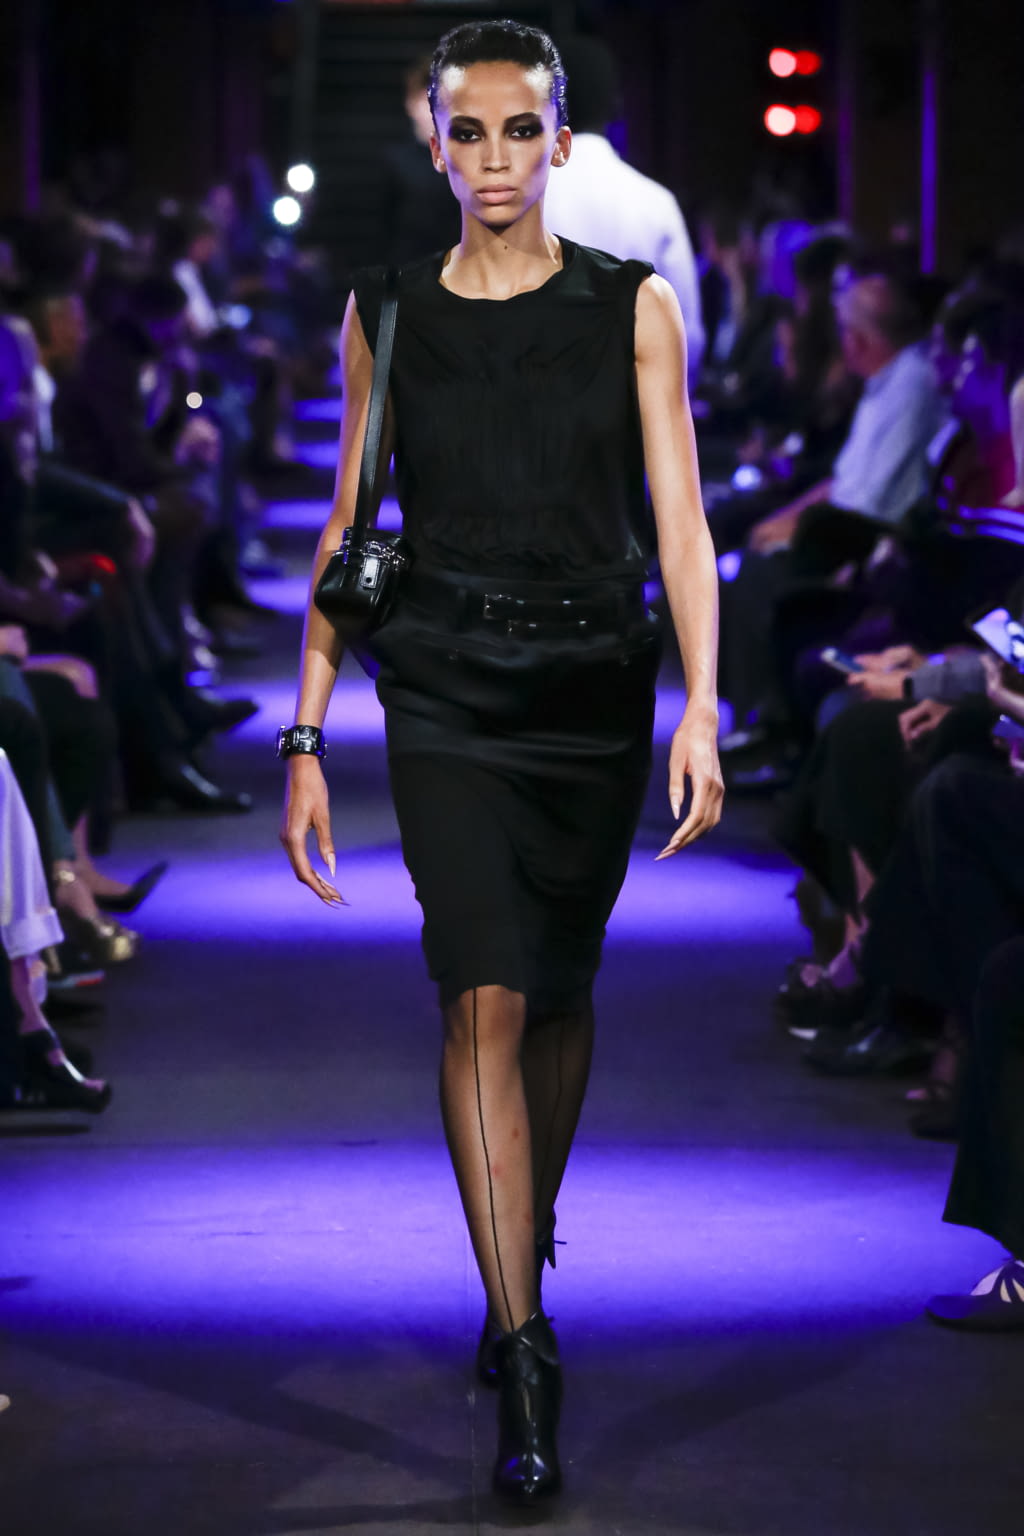 Louis Vuitton SS20 menswear #19 - Tagwalk: The Fashion Search Engine